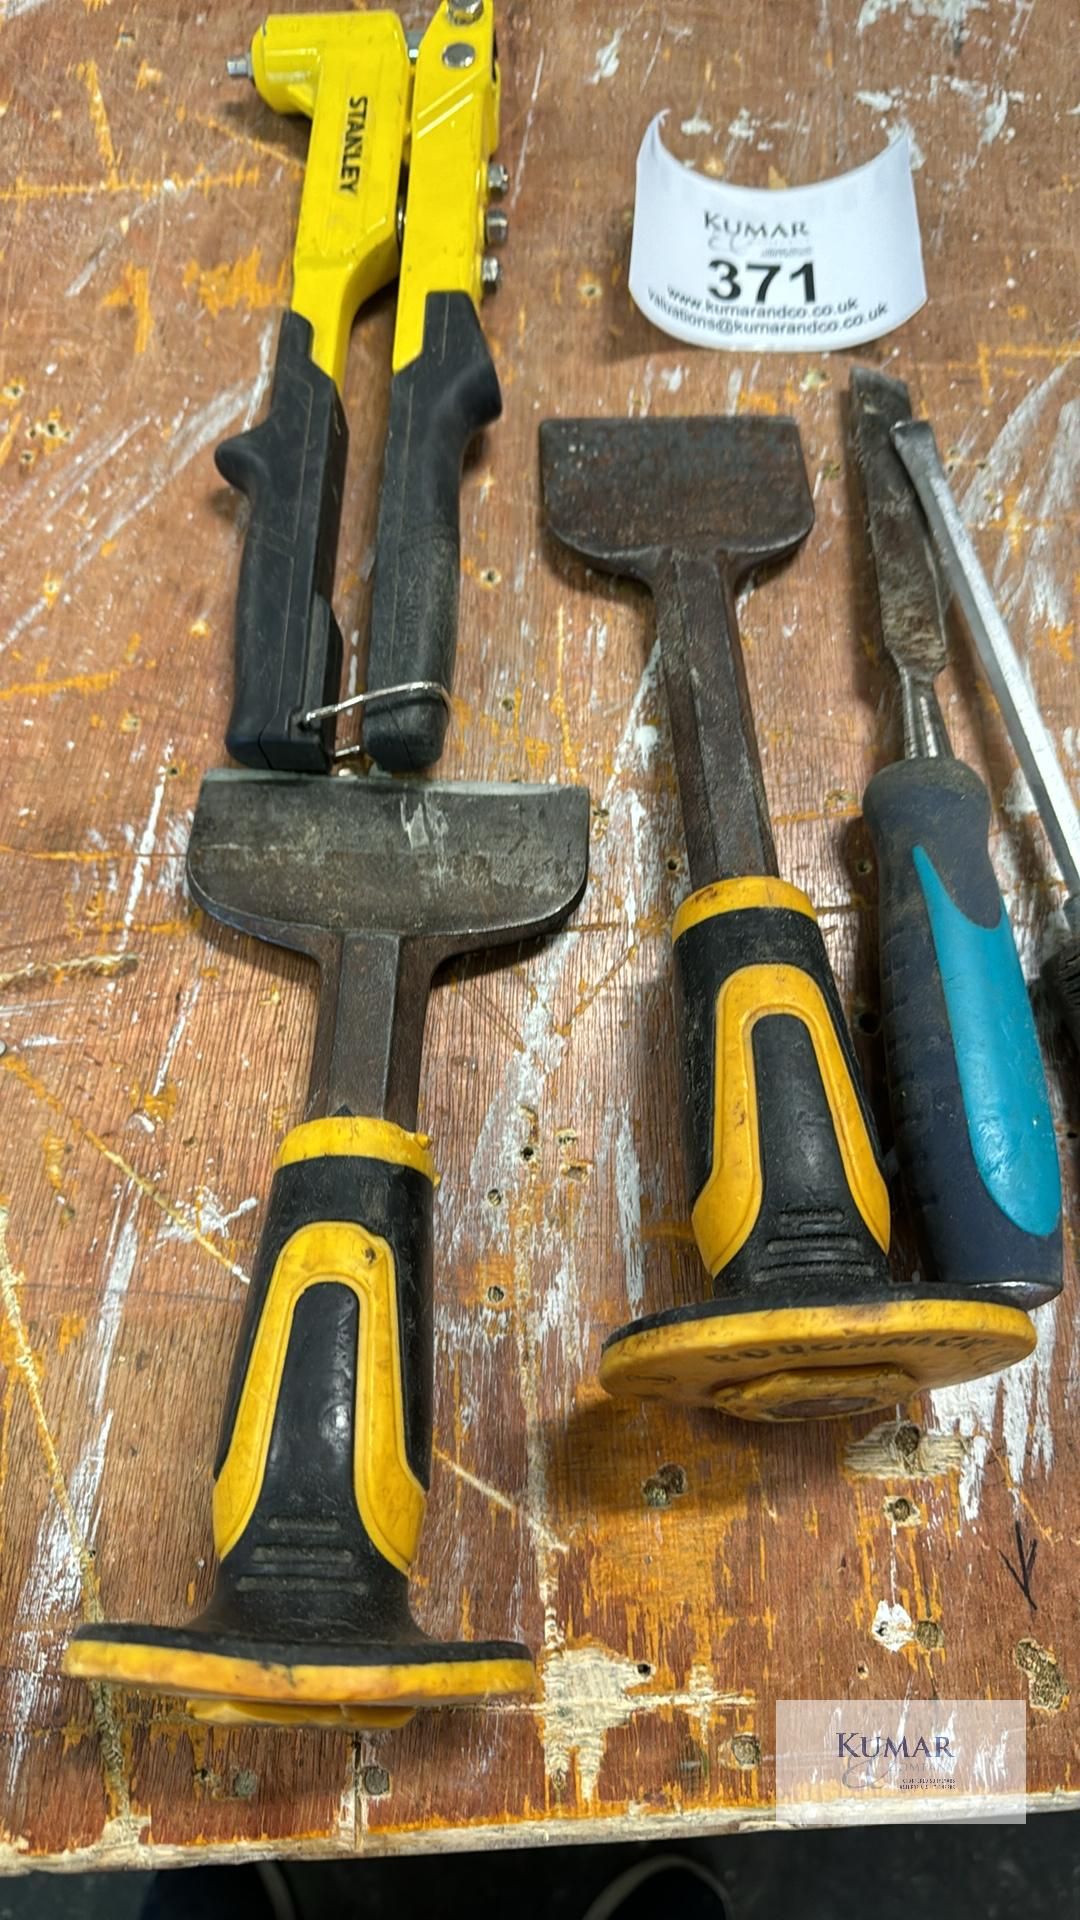 Quantity of Hand Tools & Rivet Gun, Pry Bars, Chisel Etc - Image 3 of 4